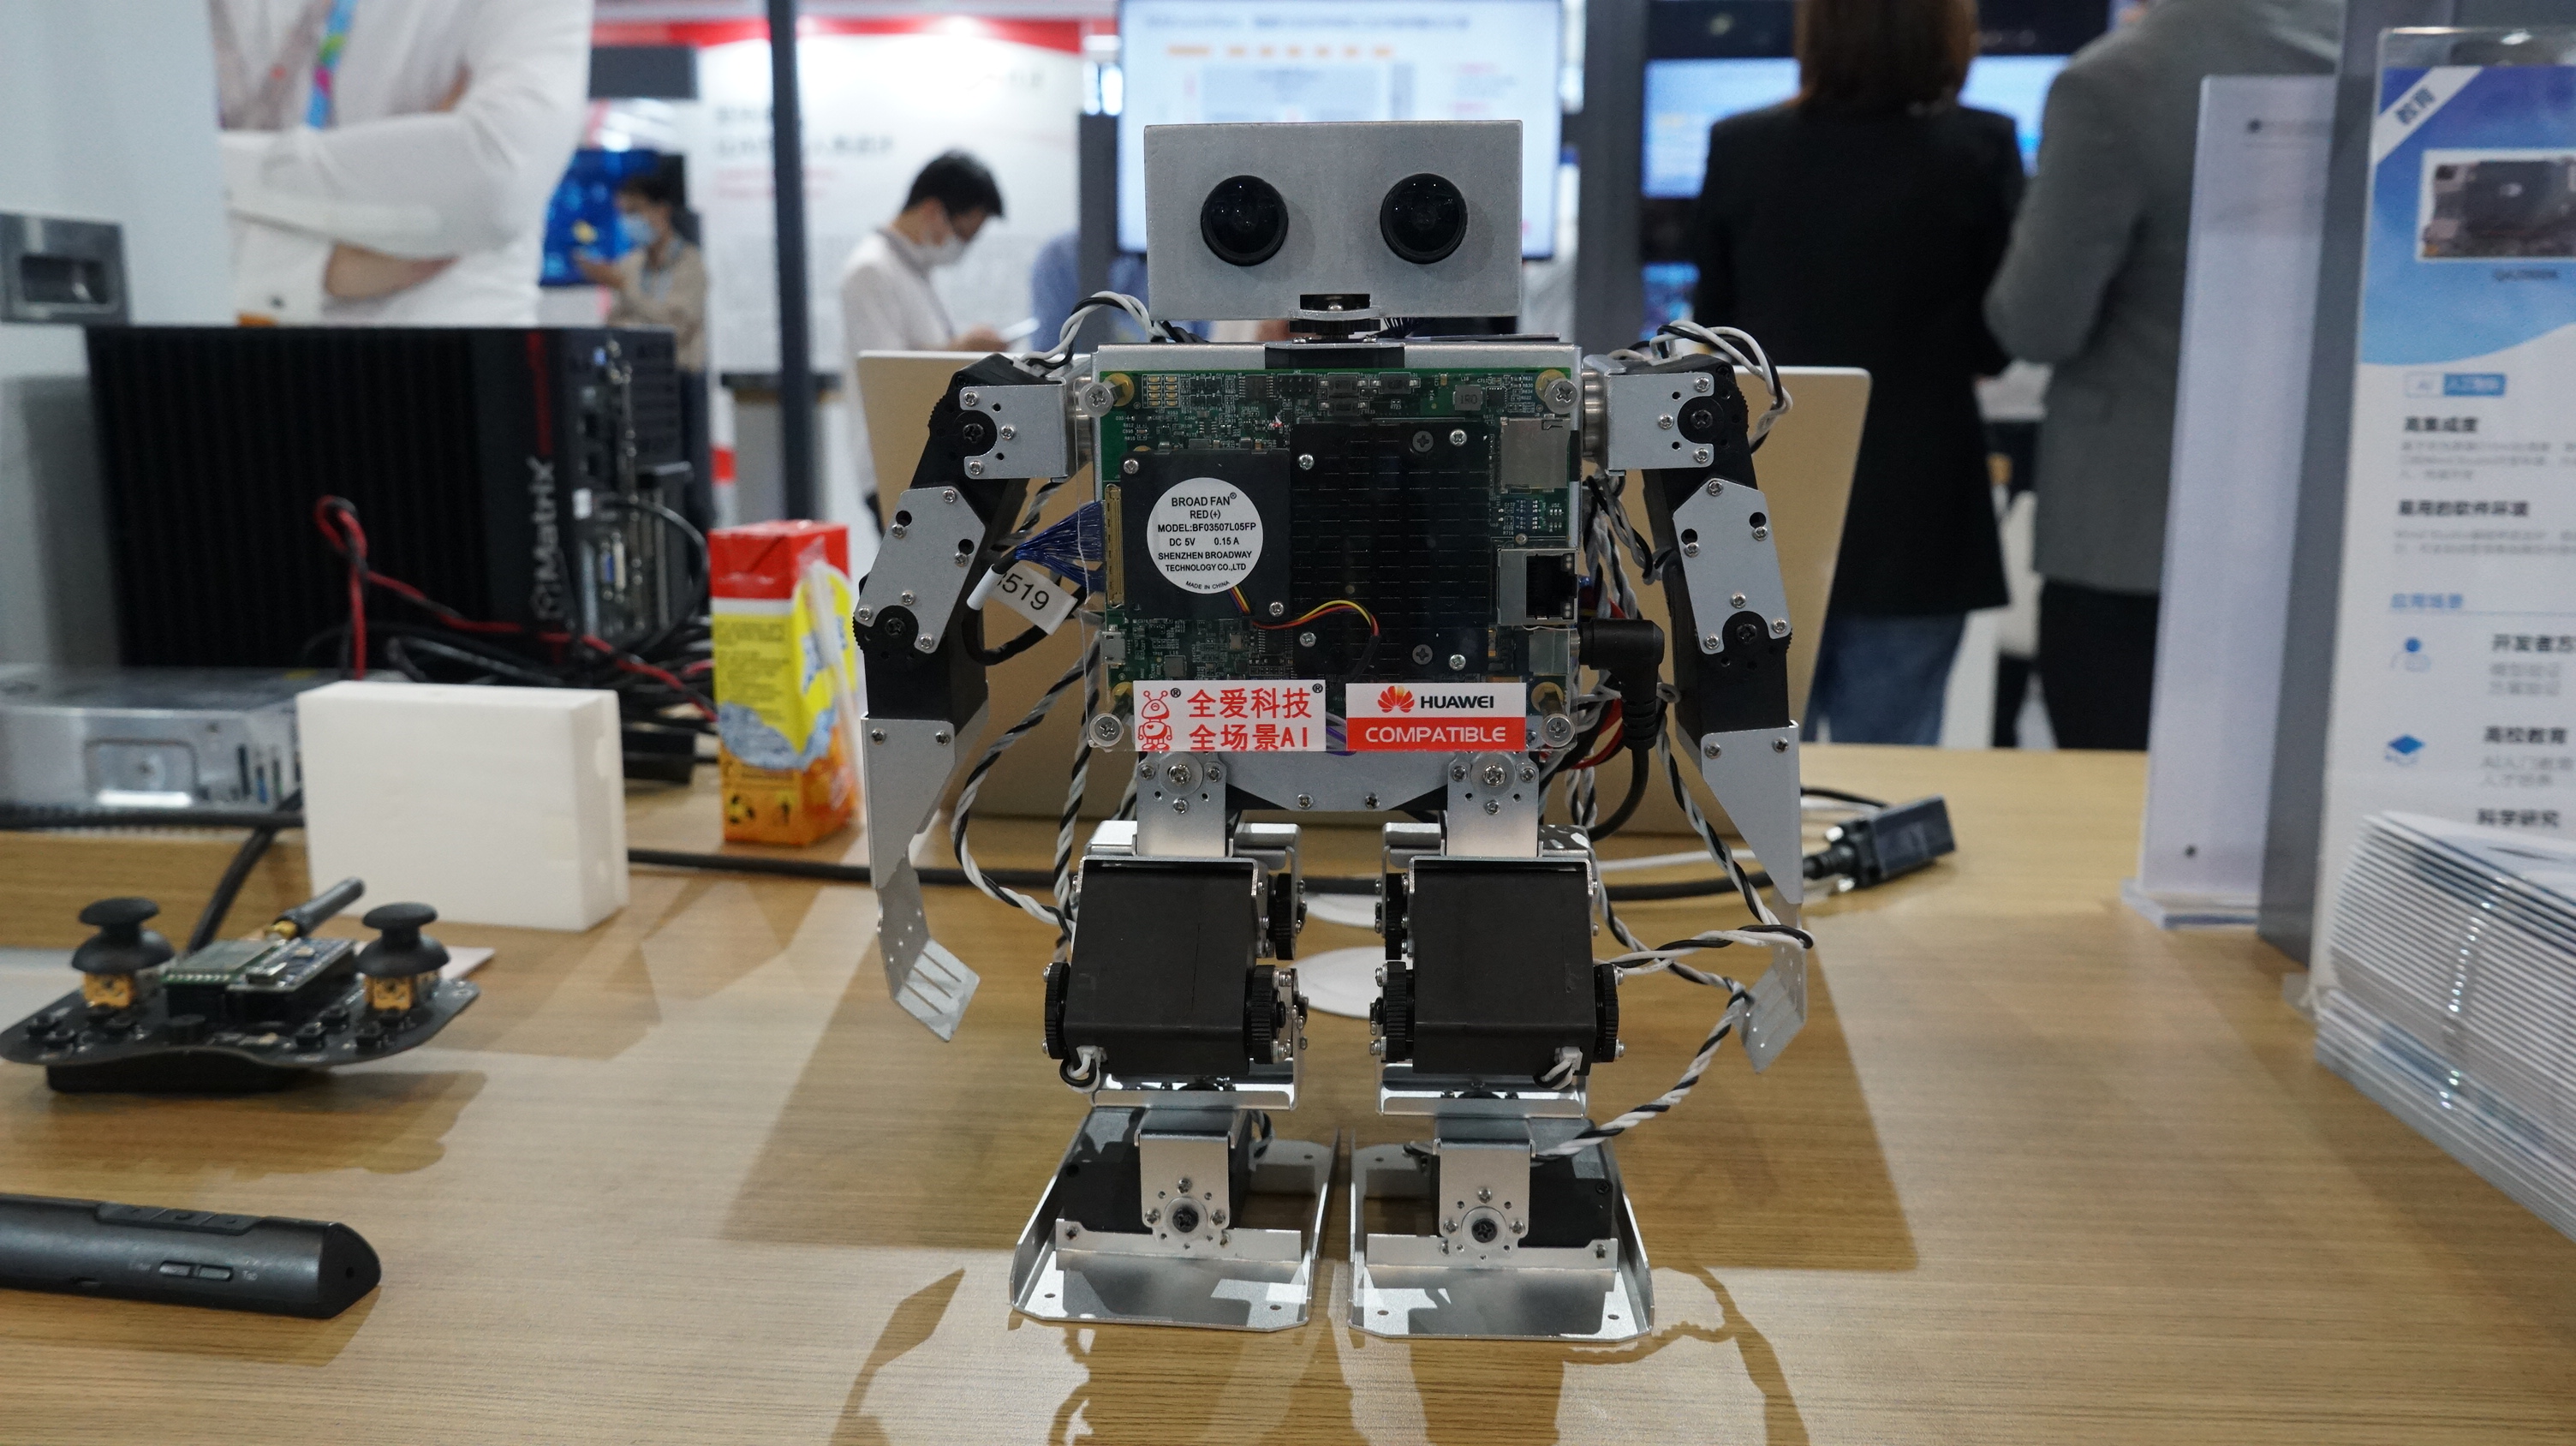 基於華為Atlas半導體、人工智能技術的智能機器人。這款機器人支持雙面4K實時視頻分析，可實現視覺交互的超小型無人系統，擁有17個自由度的雙足仿人形智能機器人，驅動控制24路電機，支持多傳感器。(記者 何德花 攝)

